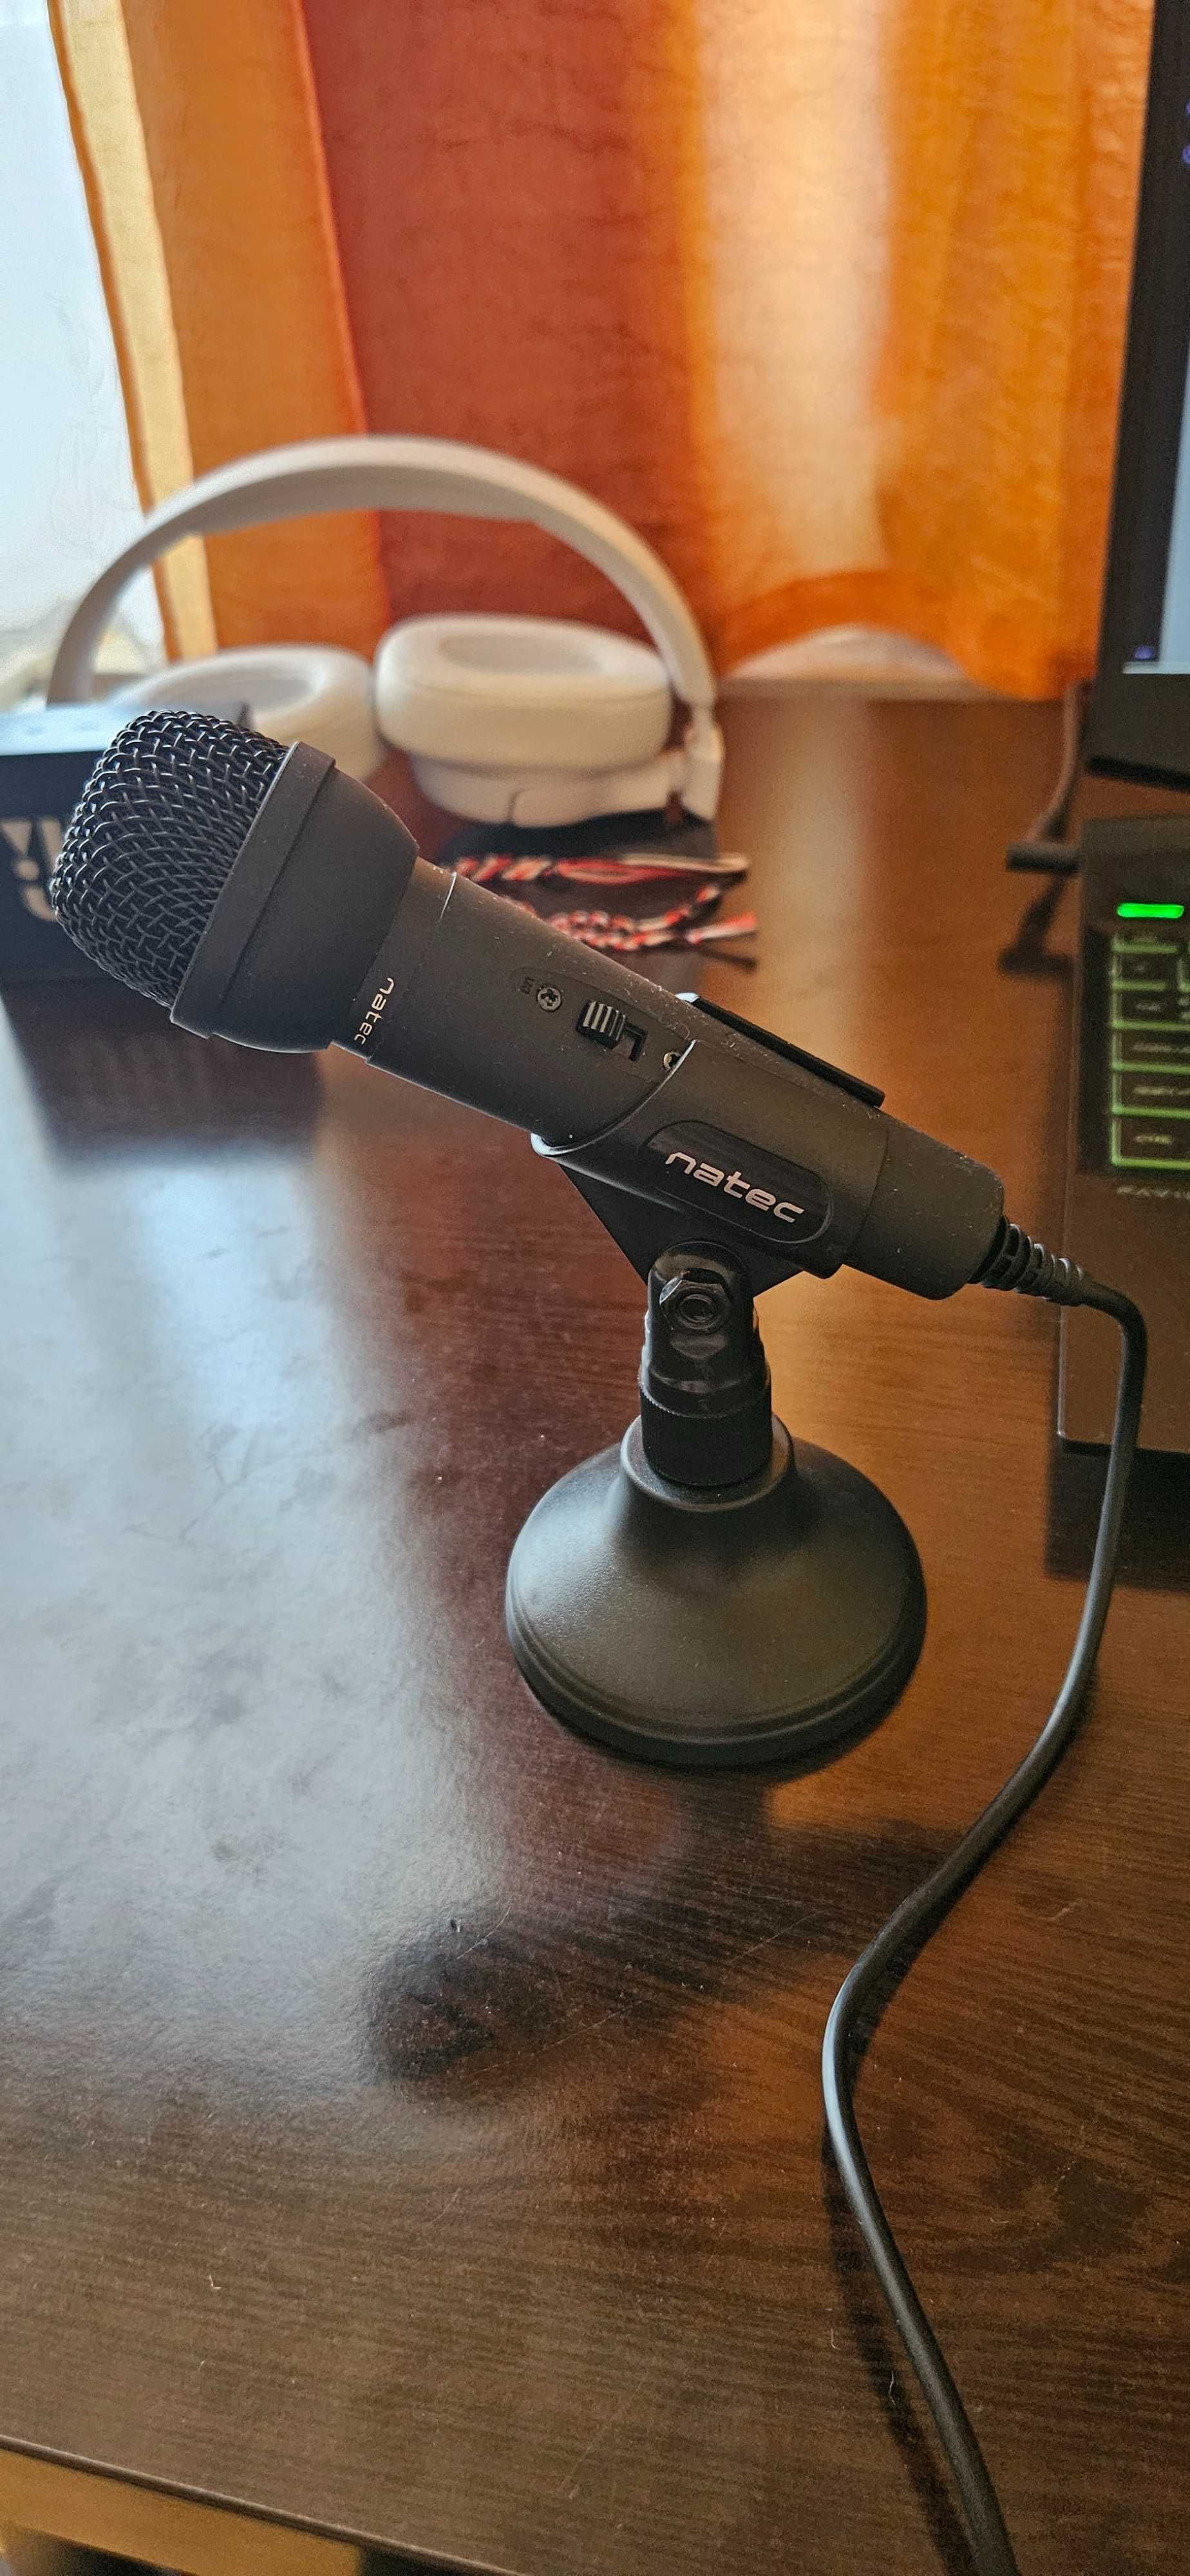 Nowy mikrofon firmy Natec